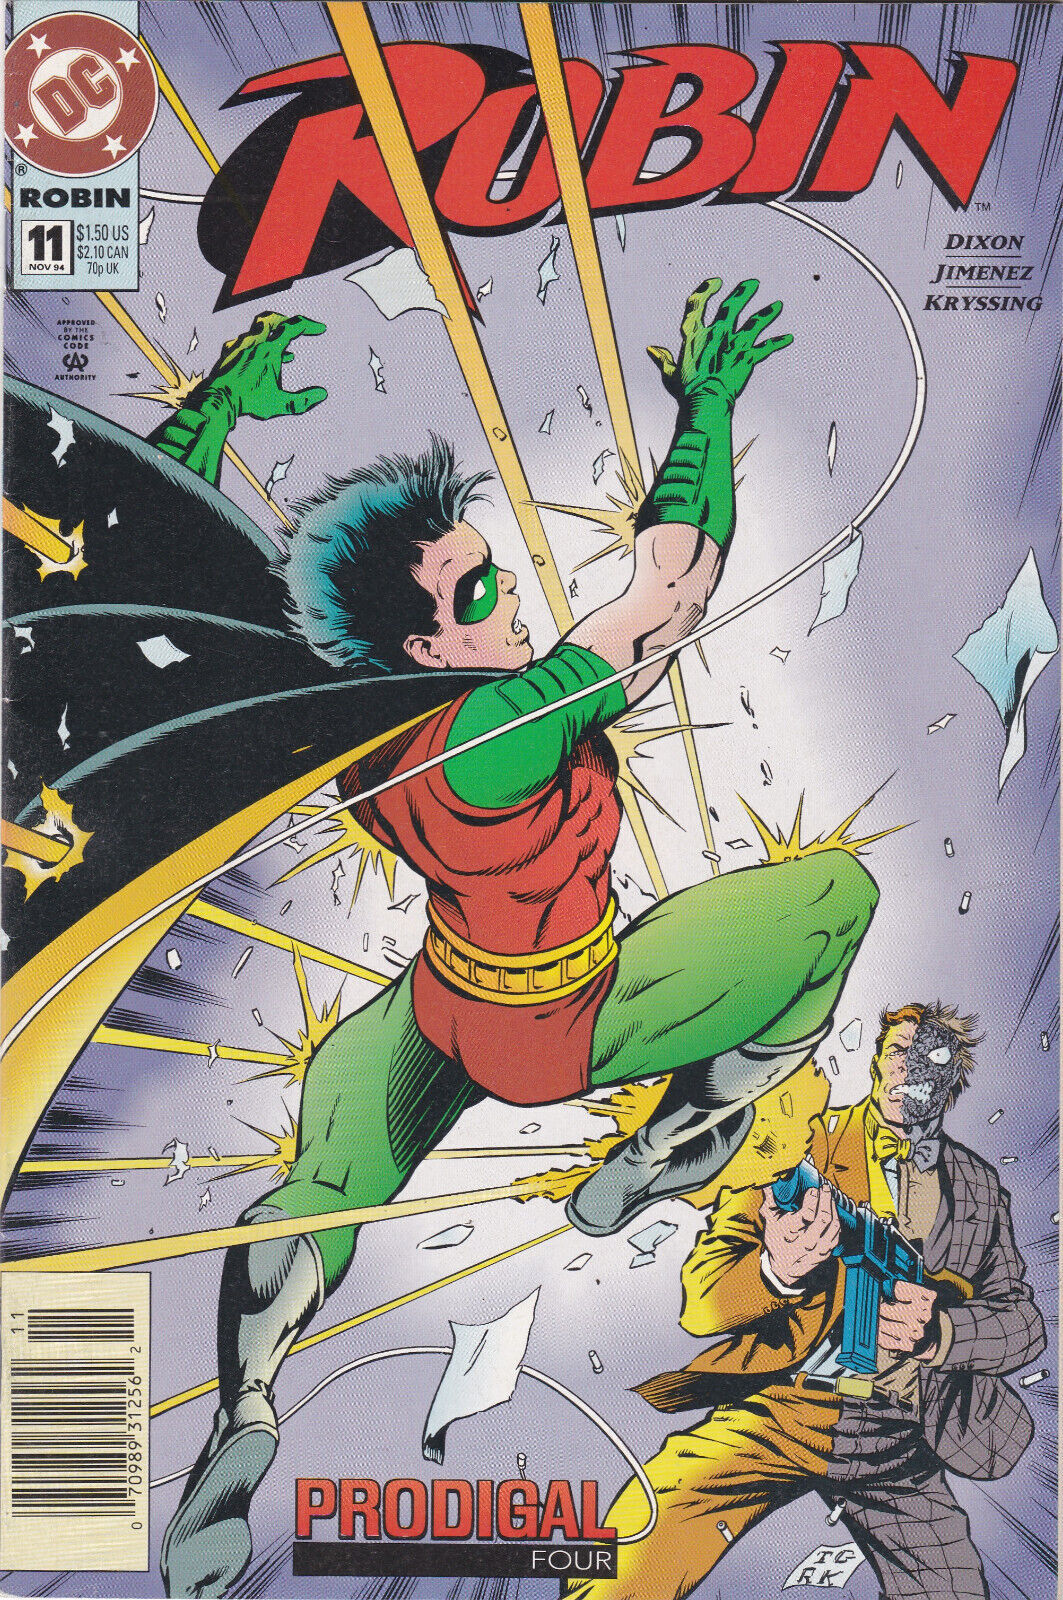 Robin #11, Vol. 2 (1993-2009) DC Comics, High Grade,Newsstand